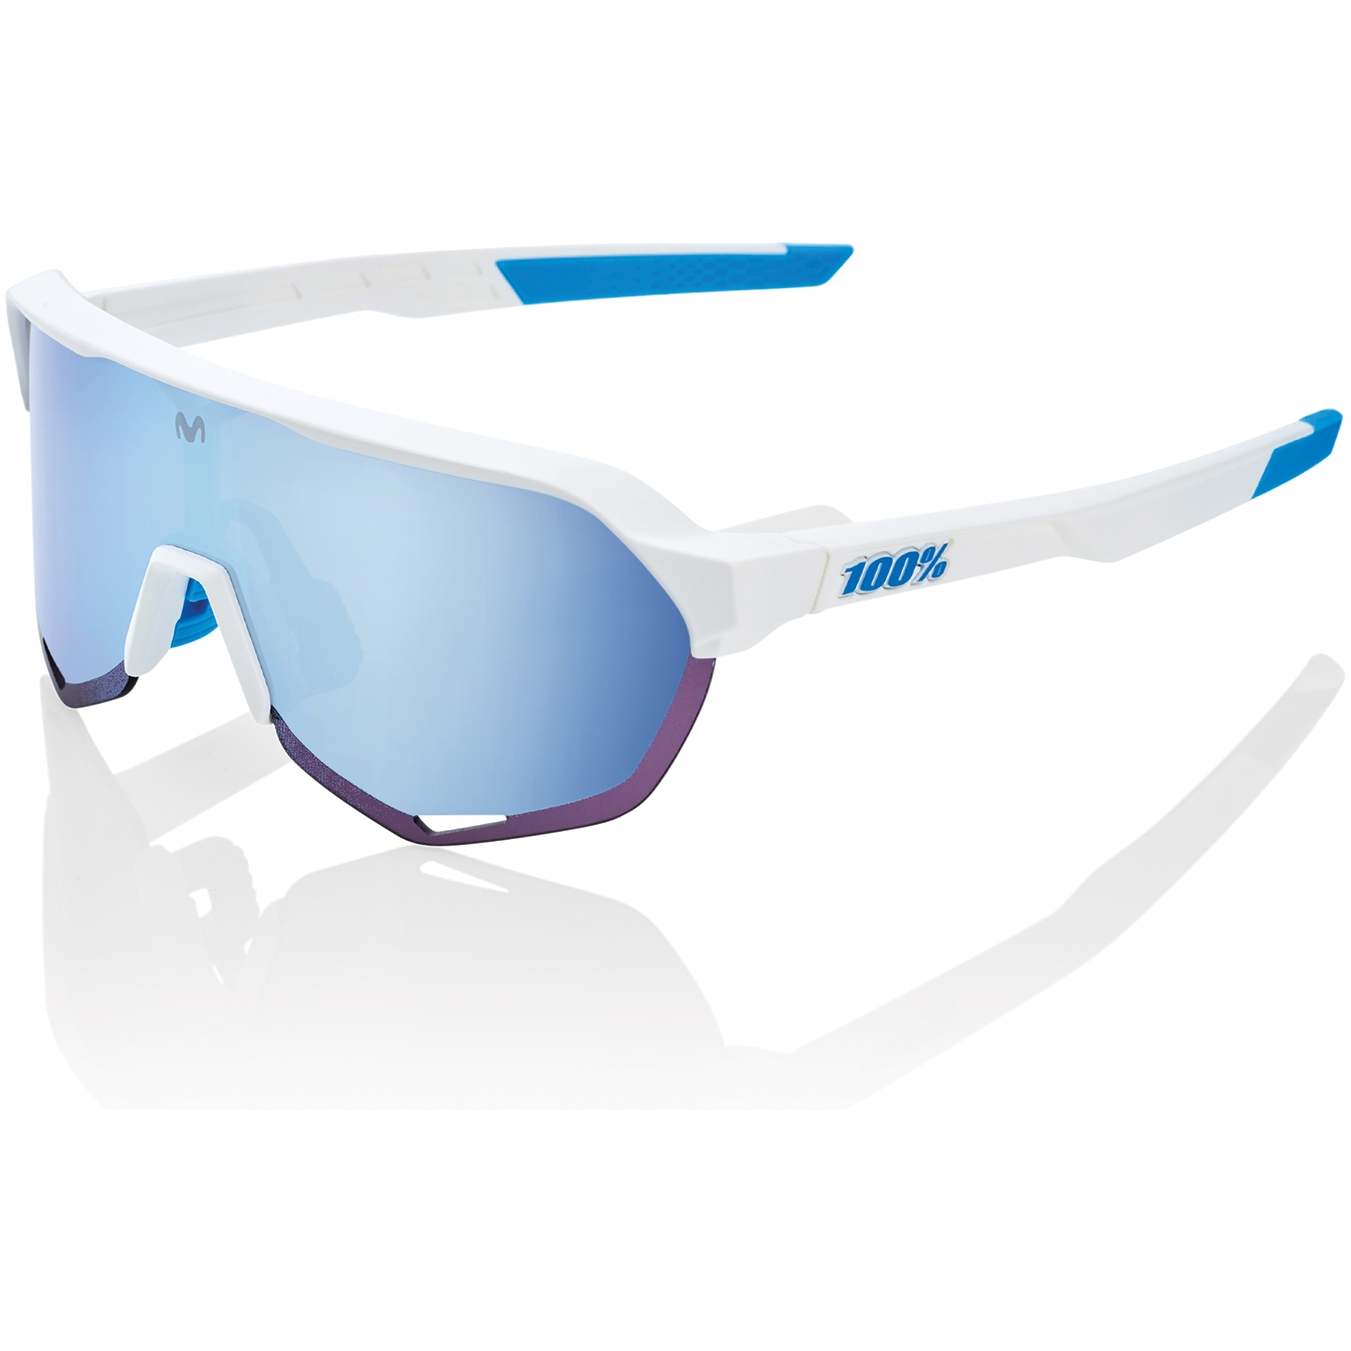 Produktbild von 100% S2 Movistar Glasses - HiPER Mirror Lens - Team White / Blue Multilayer + Clear